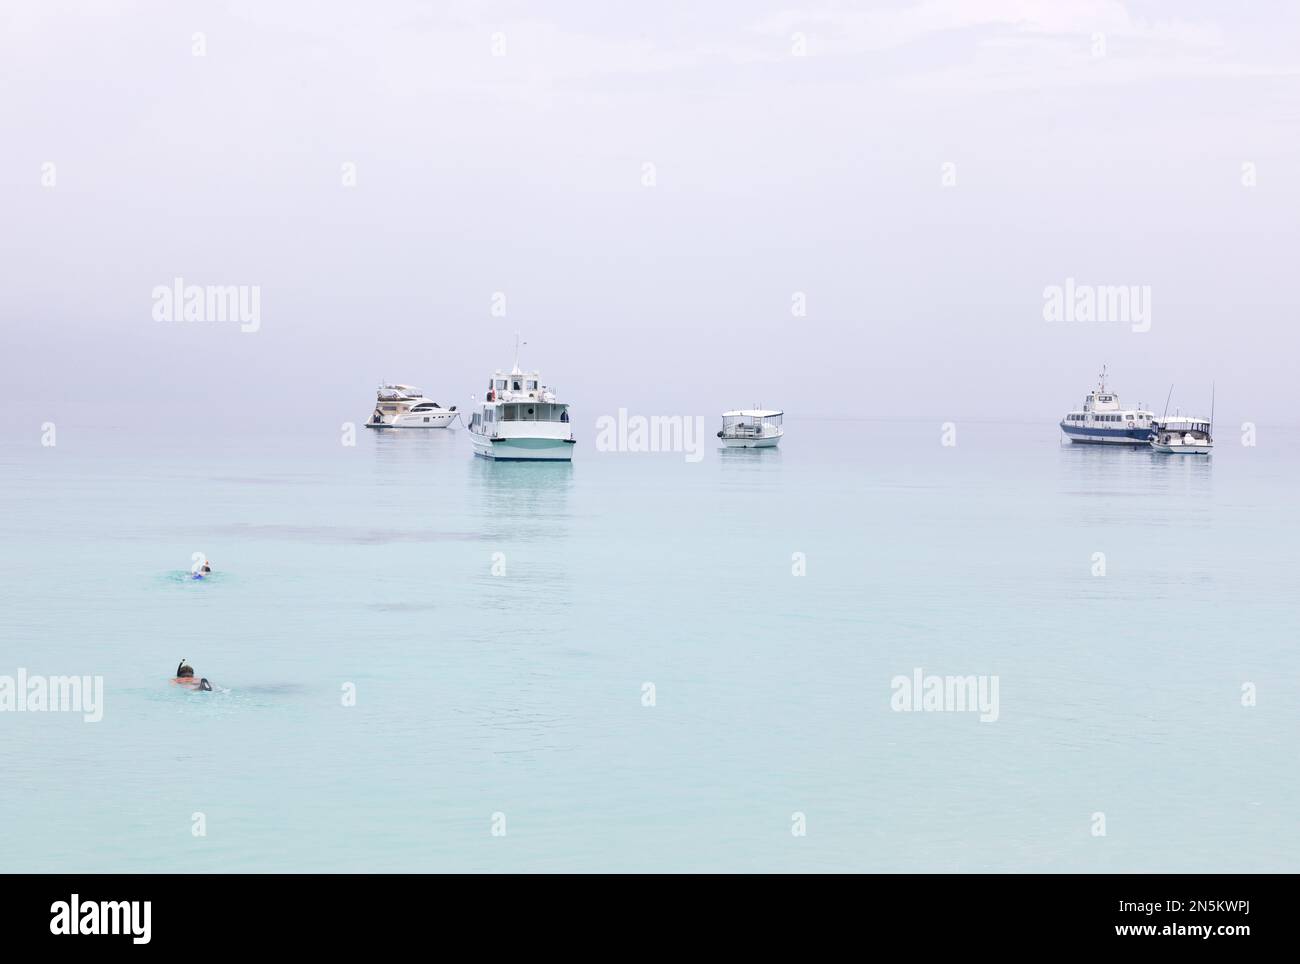 Ruhiges Wasser; 2 Personen schwimmen und schnorcheln in der Nähe von Booten an einem ruhigen Morgen, Malediven, Indischer Ozean Asien. Konzept ruhig und friedlich. Stockfoto